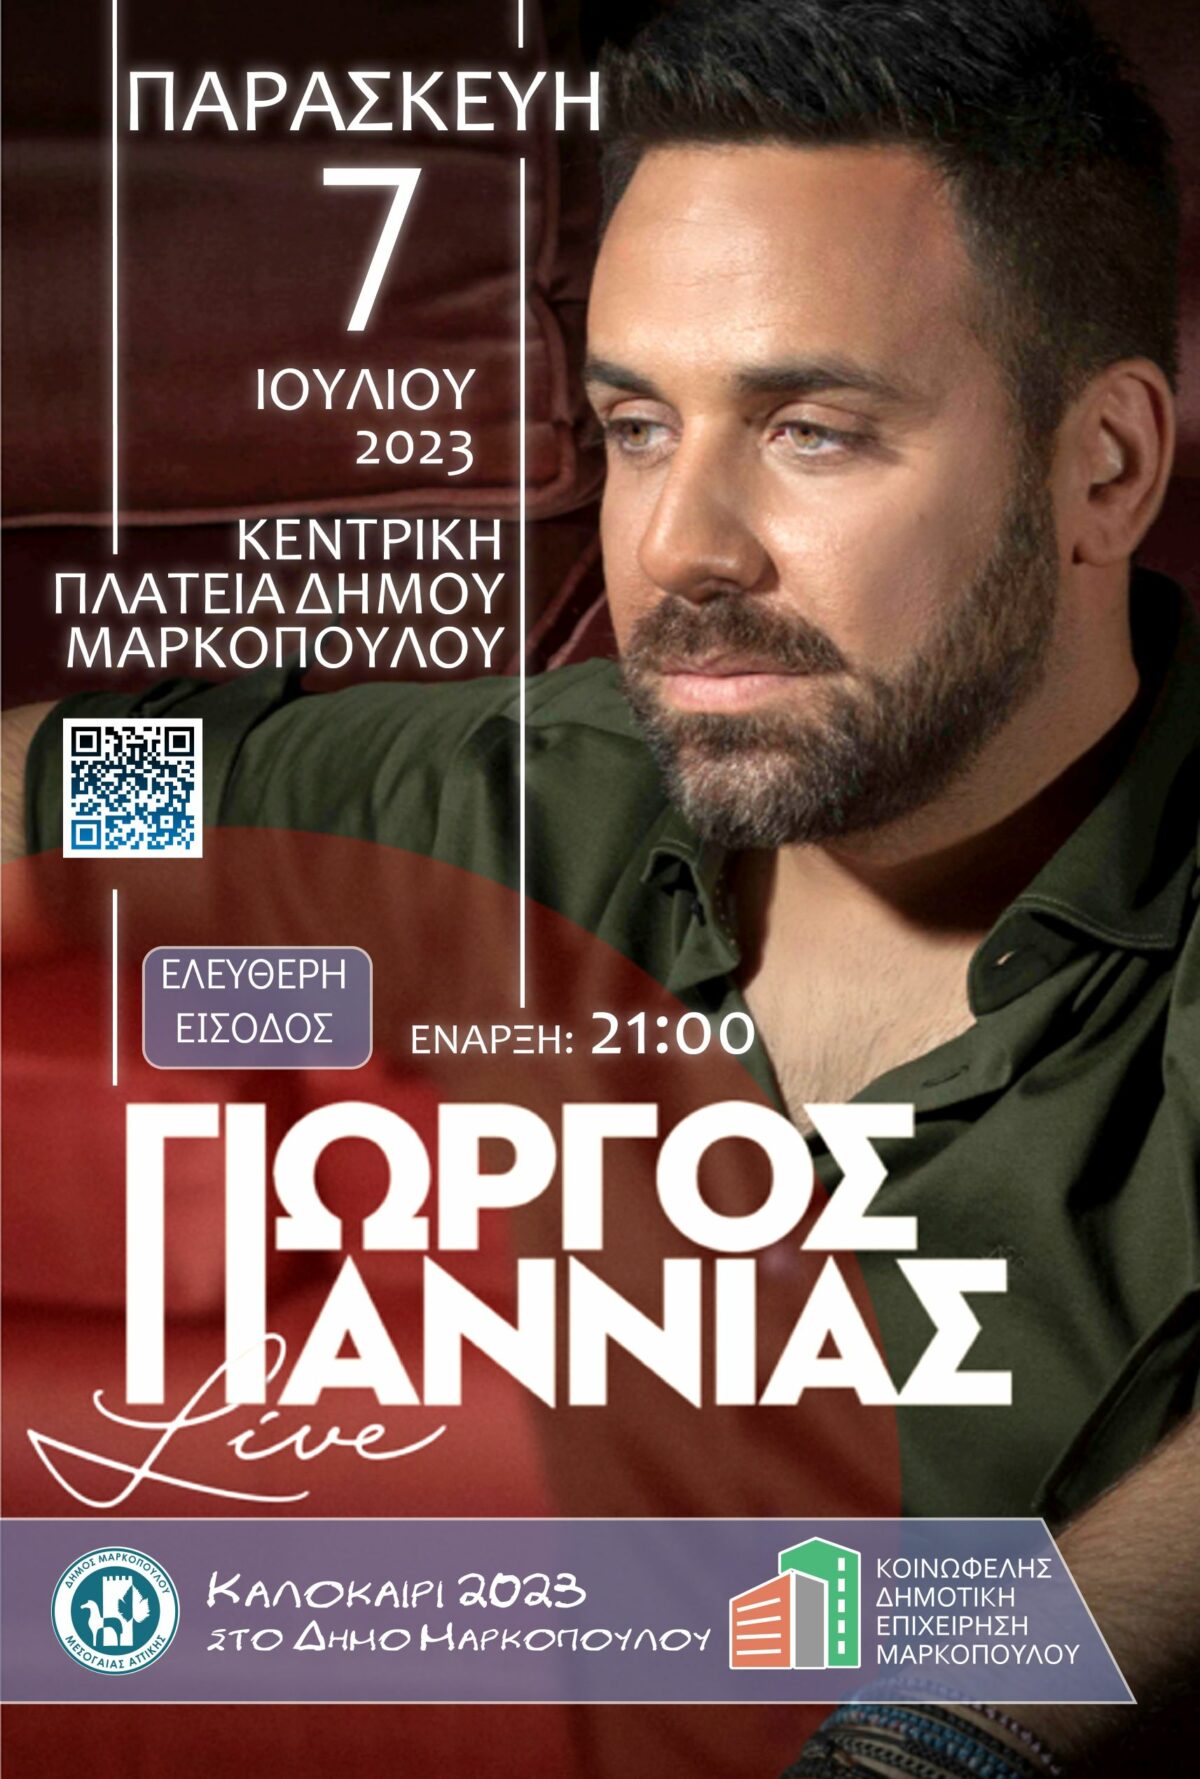 Νέα ημερομηνία μουσικής εκδήλωσης με τον Γιώργο Γιαννιά στην Κεντρική Πλατεία Μαρκοπούλου